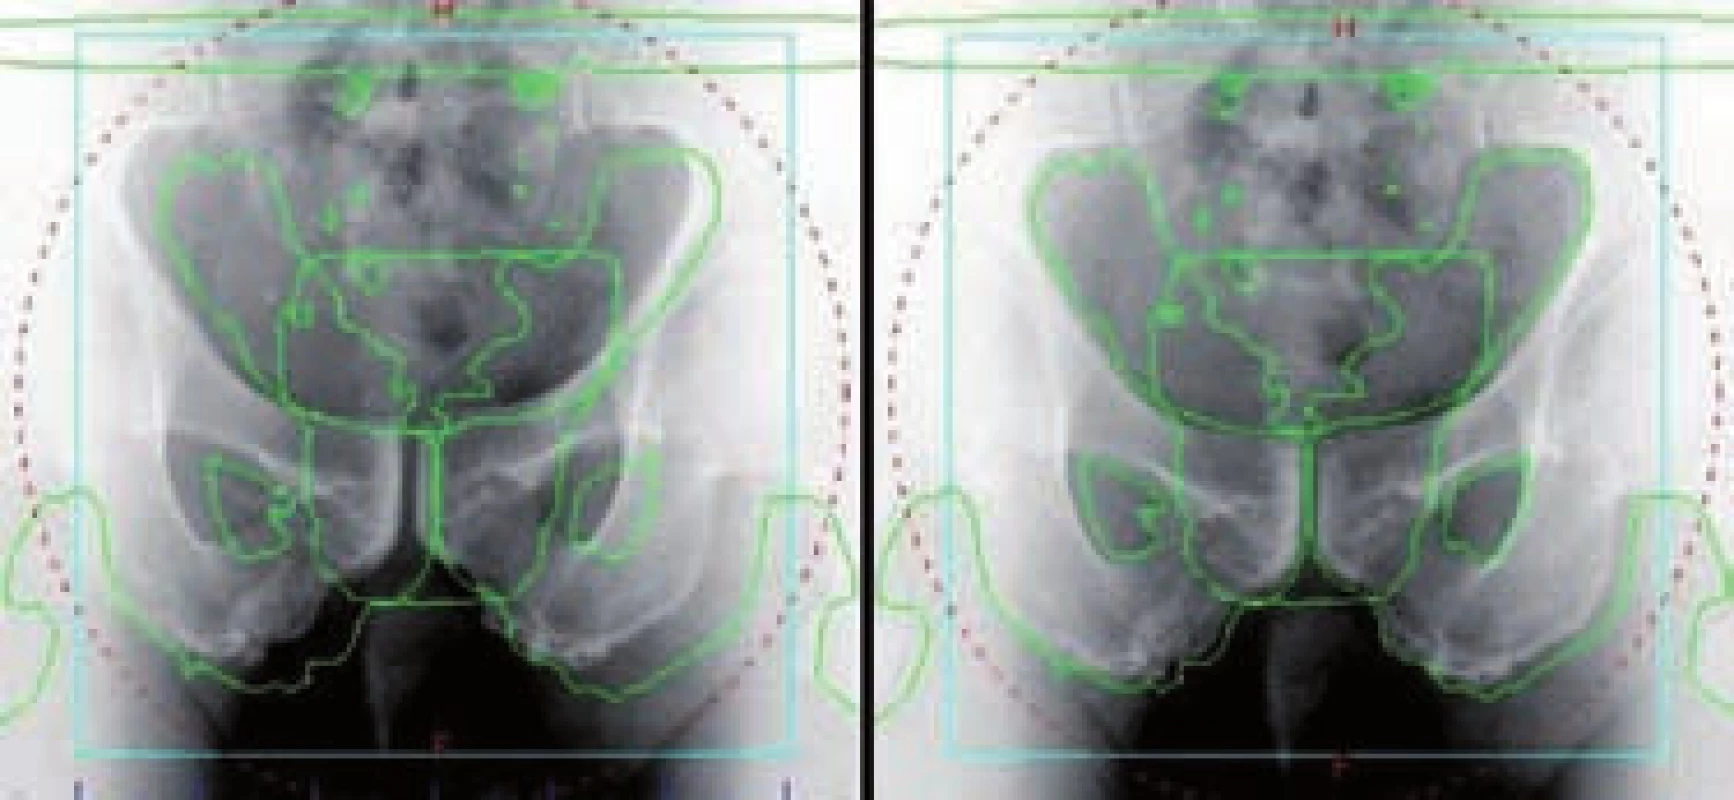 kV zobrazení v AP projekci – radioterapie řízená obrazem (IGRT)
Fig. 9 kV imaging in AP projection – image-guided radiation therapy (IGRT)